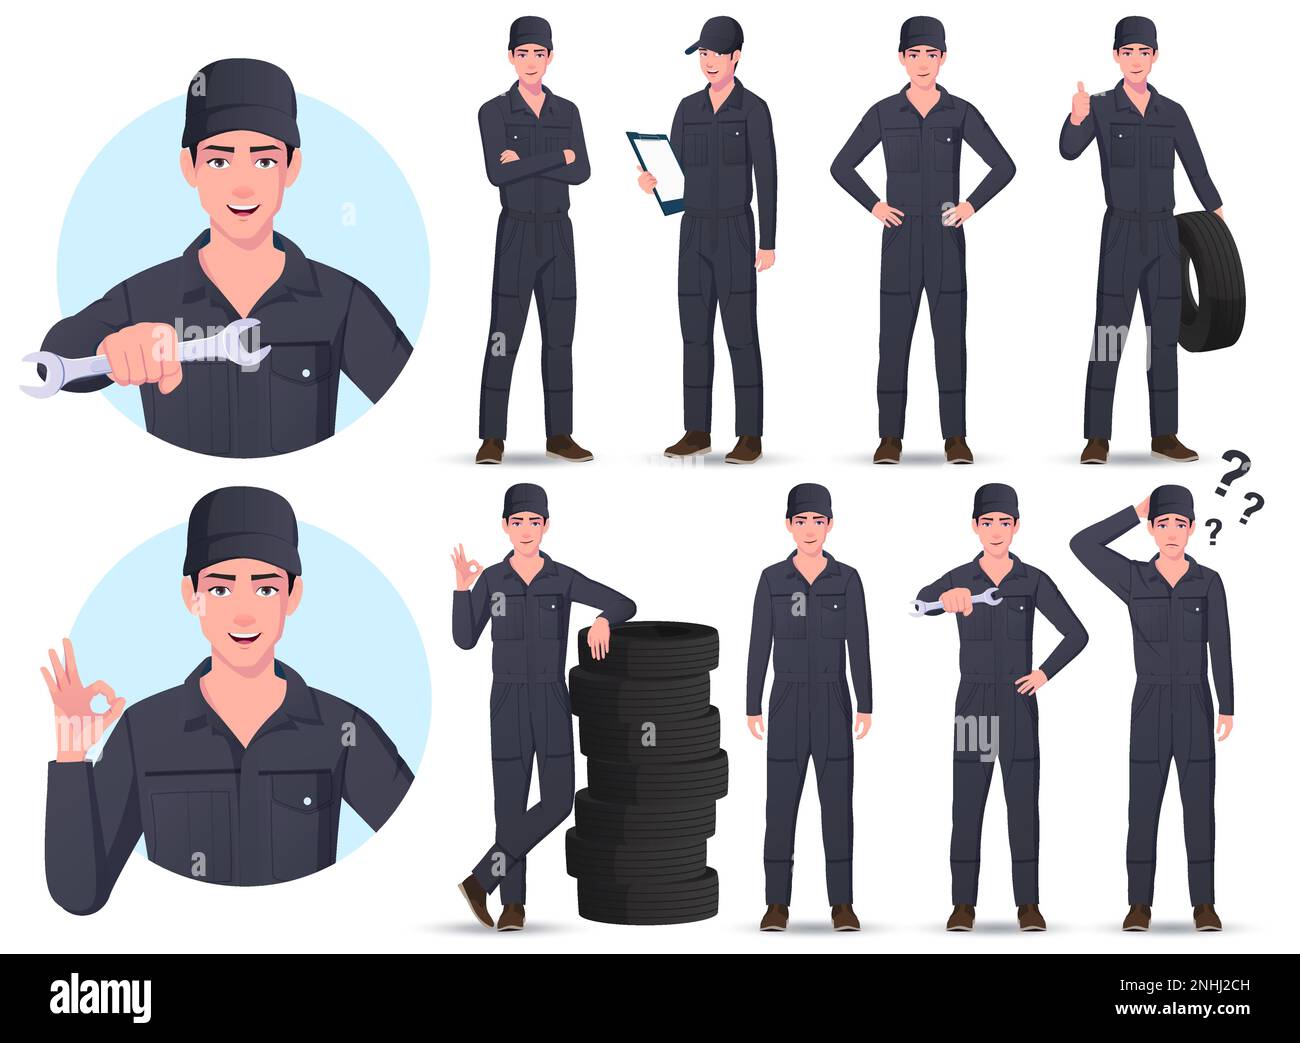 Jeu de caractères Auto Mechanic Engineer Cartoon avec différentes poses et gestes illustrations vectorielles Illustration de Vecteur